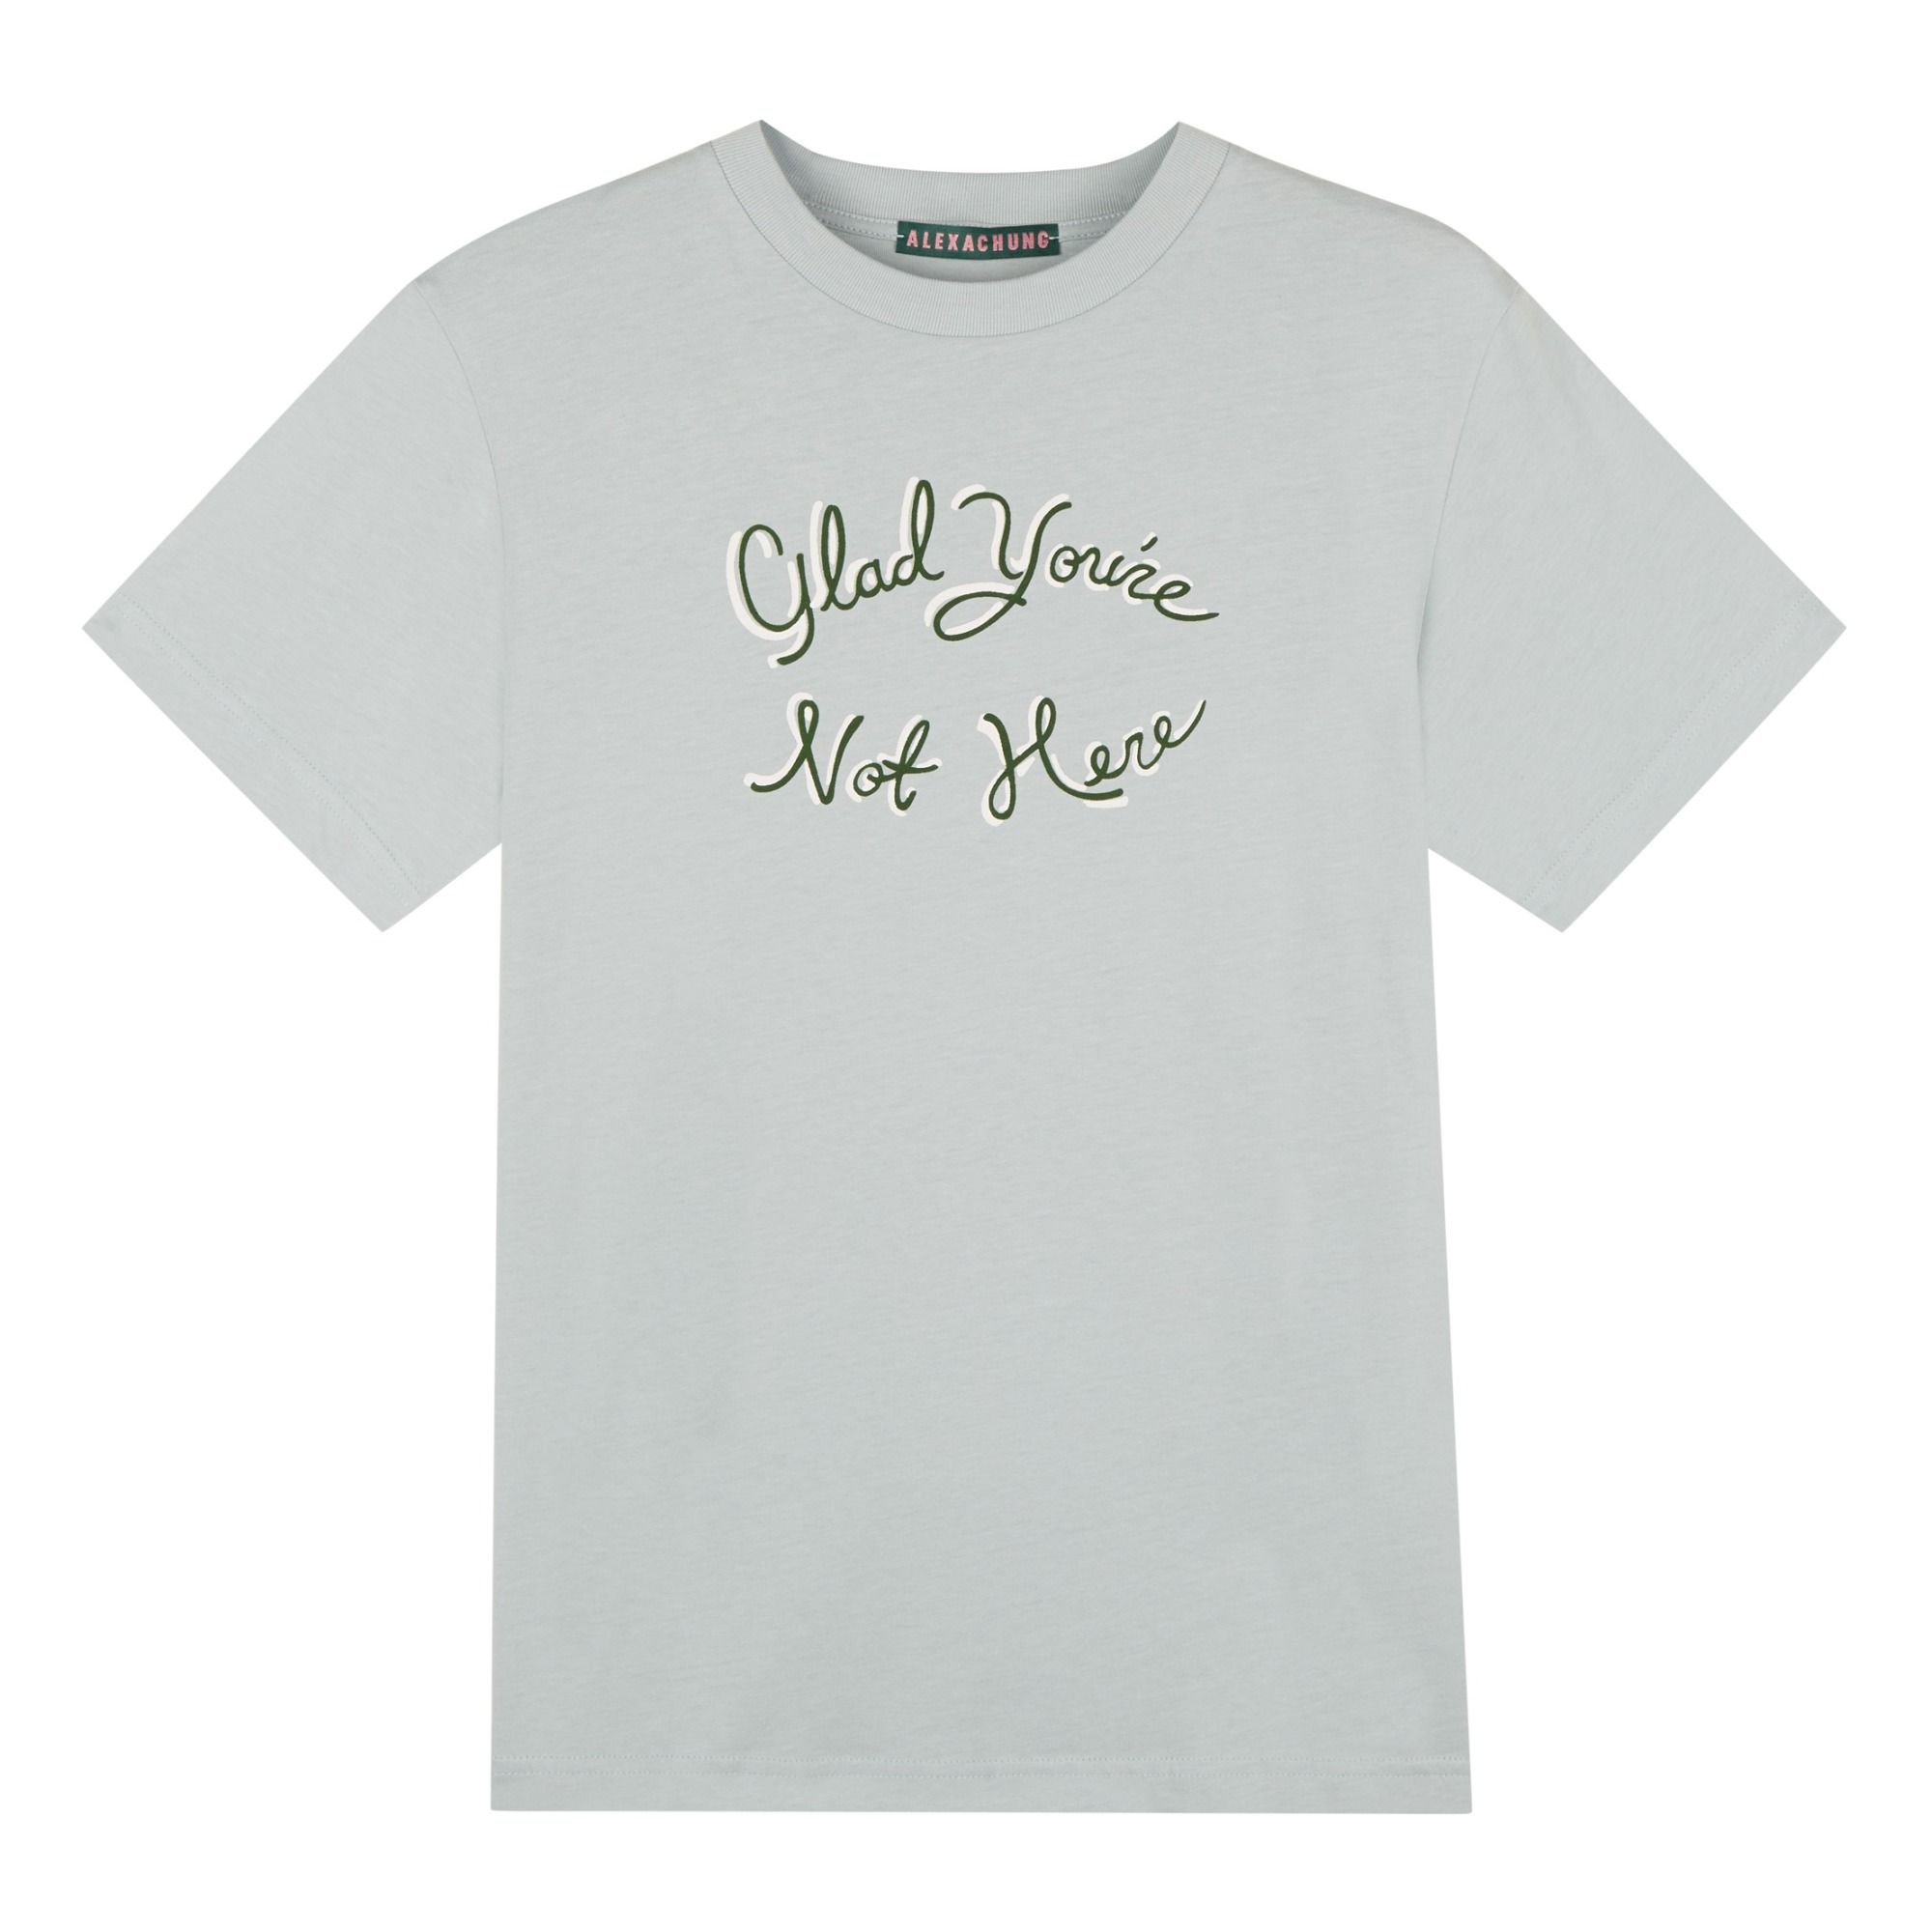 Alexa Chung - T-shirt You're Not Here - Femme - Bleu ciel